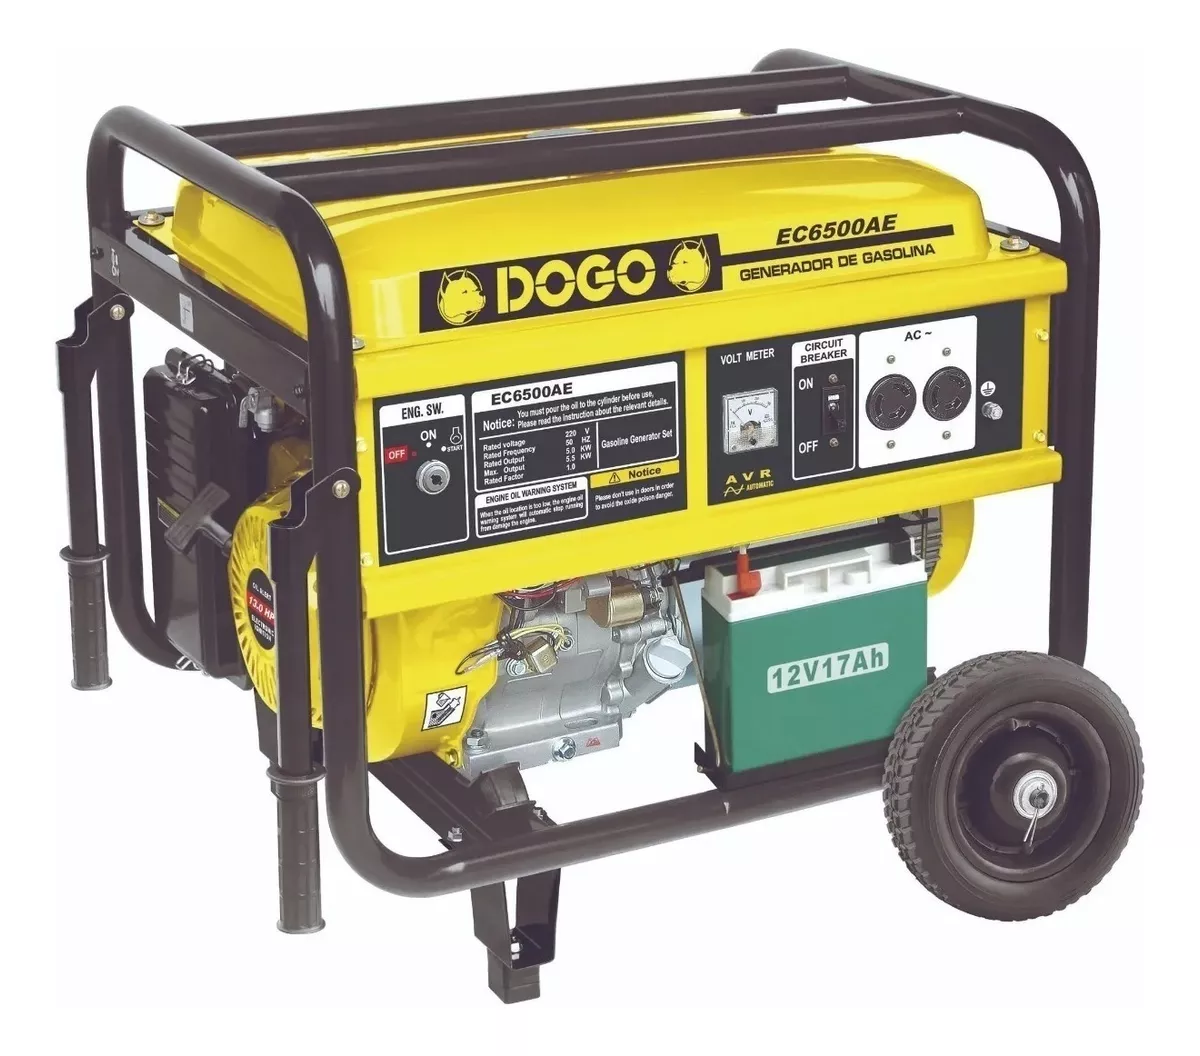 Generador Portátil Dogo Ec6500ae Monofásico Con Tecnología Avr 220v